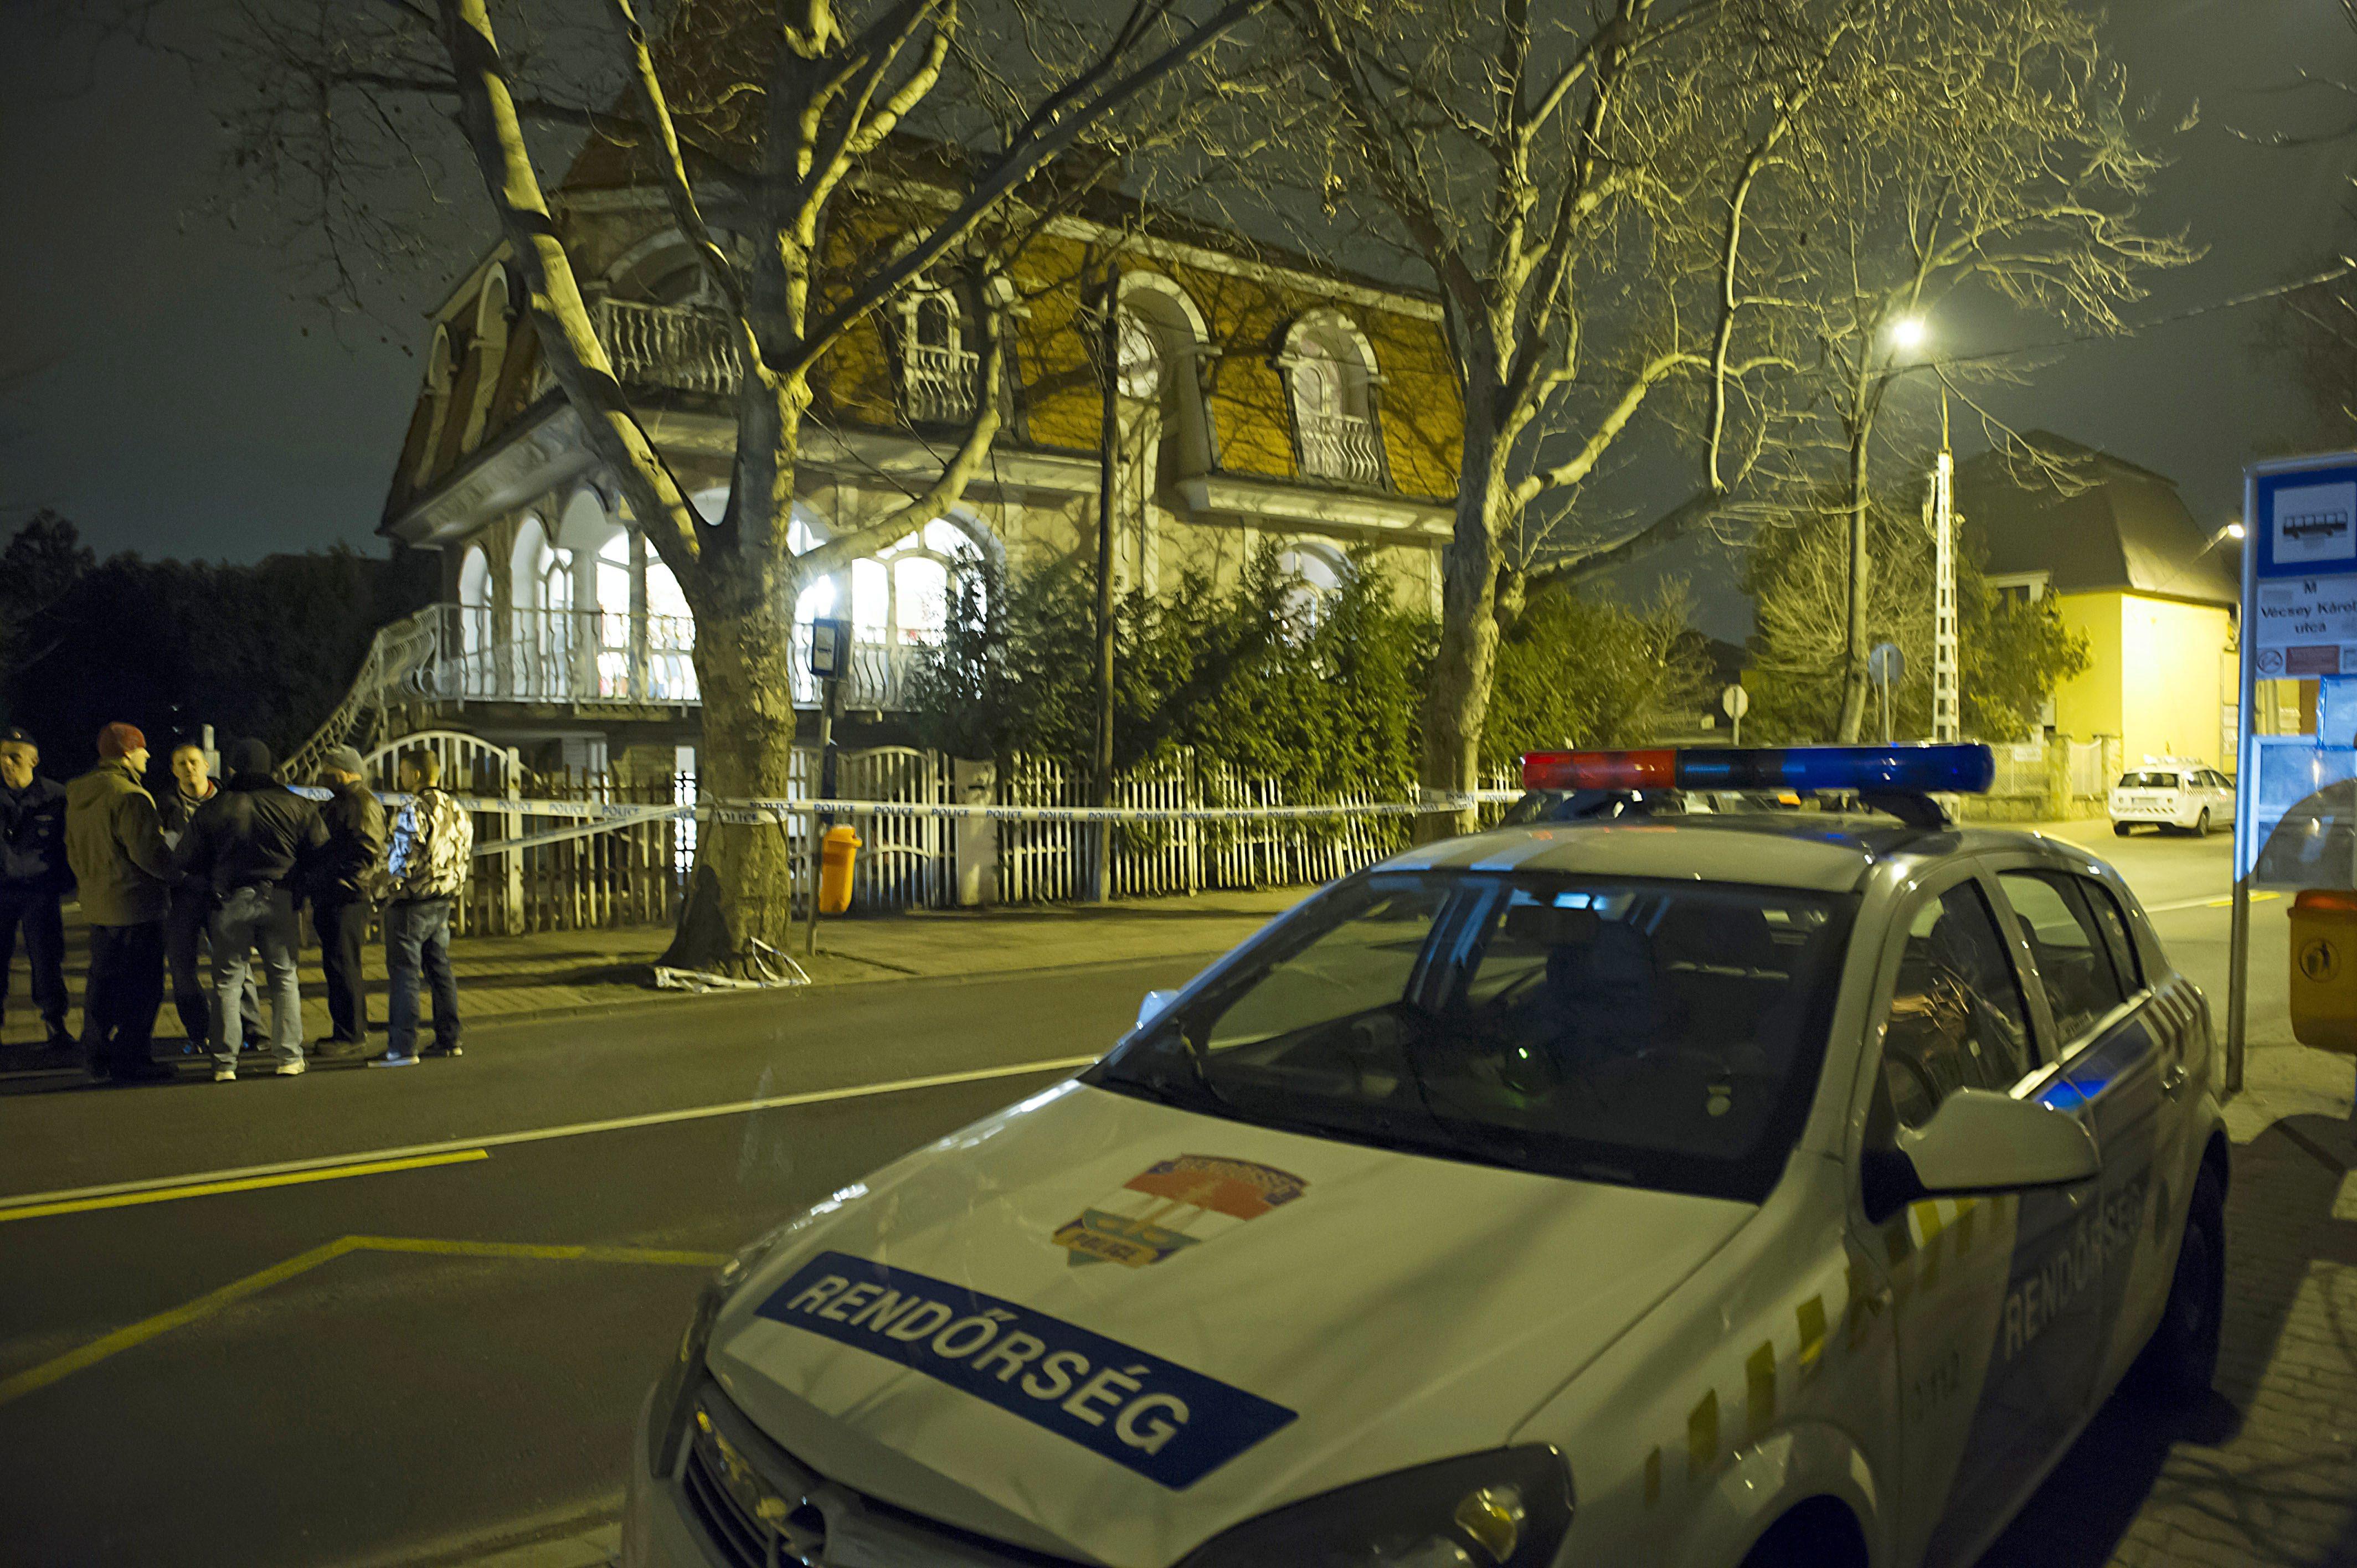 A IV. kerületi Leiningen Károly utcában található egyik házban lőttek rá egy férfira március 13-án éjjel